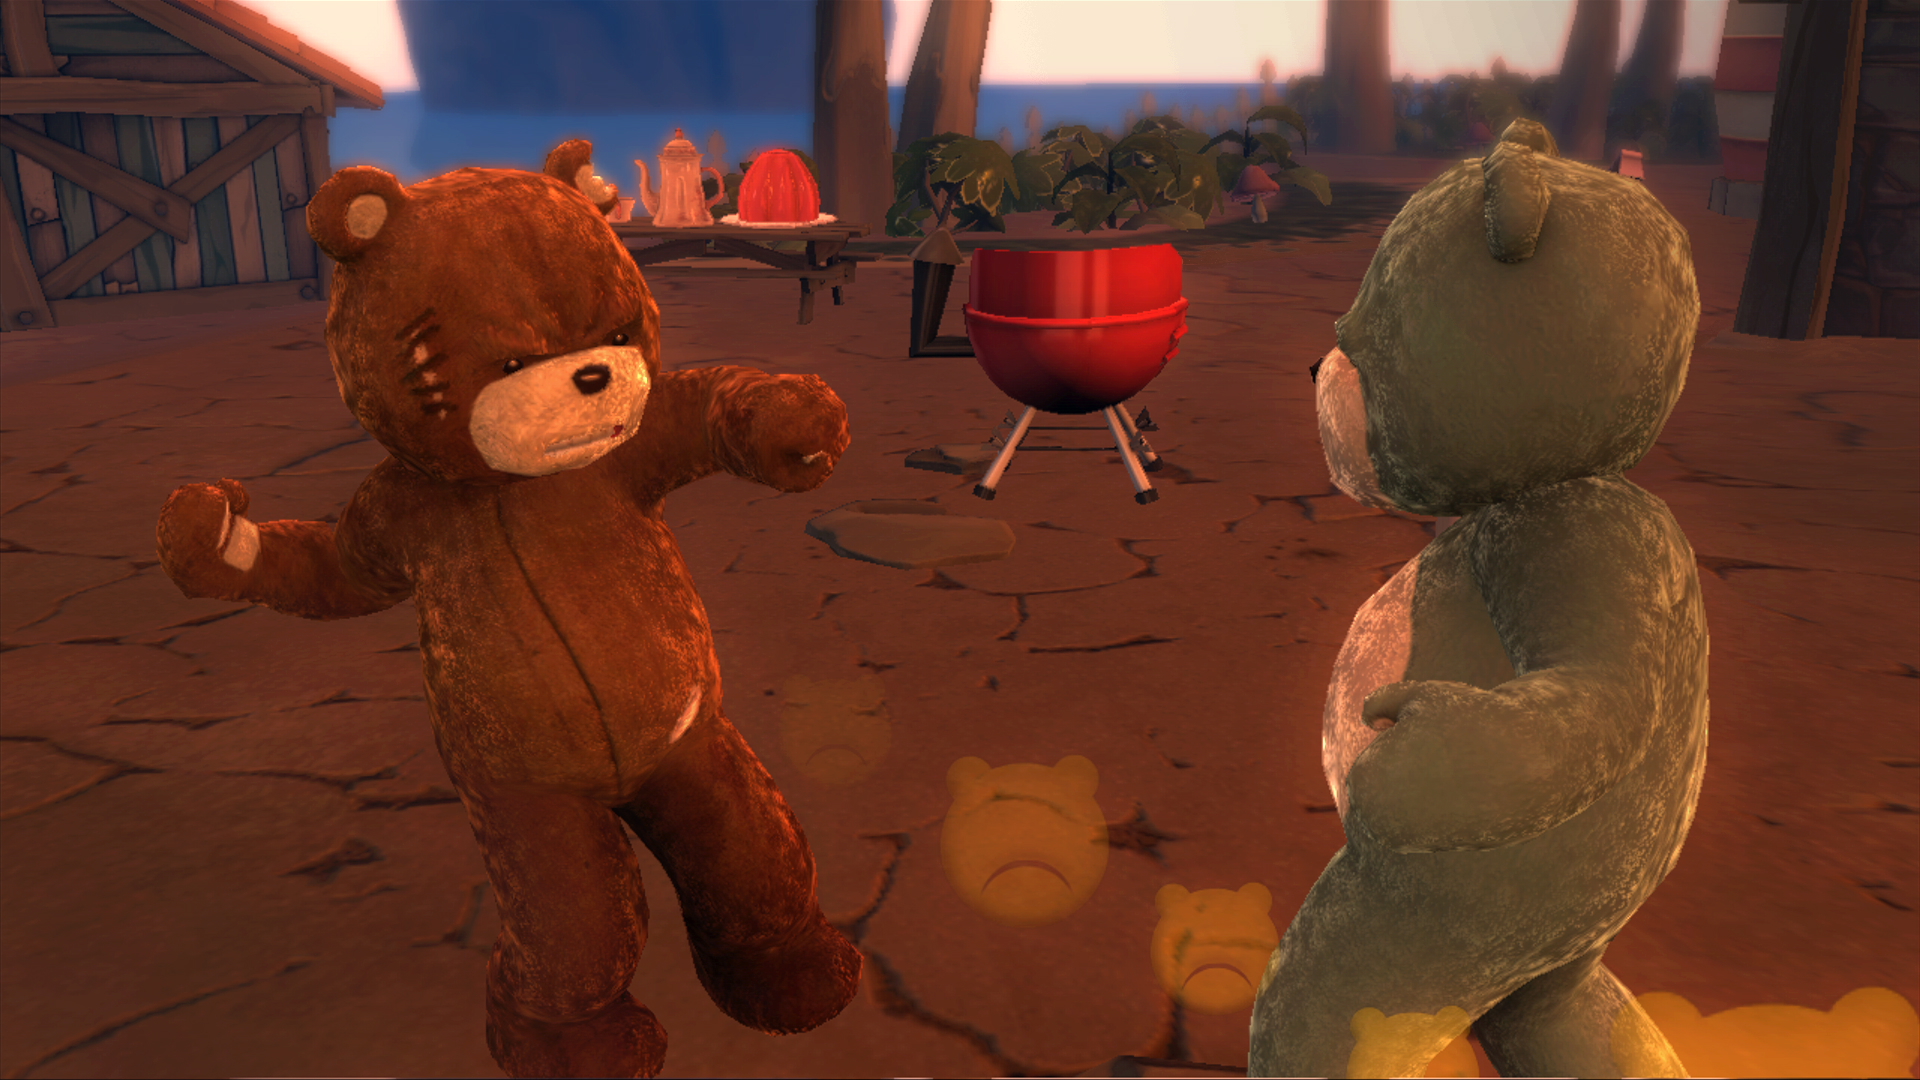 Медведь игру поиграть. Игра Naughty Bear. Naughty Bear Xbox 360. Медвежонок из игры. Мишка плюшевый из игры.